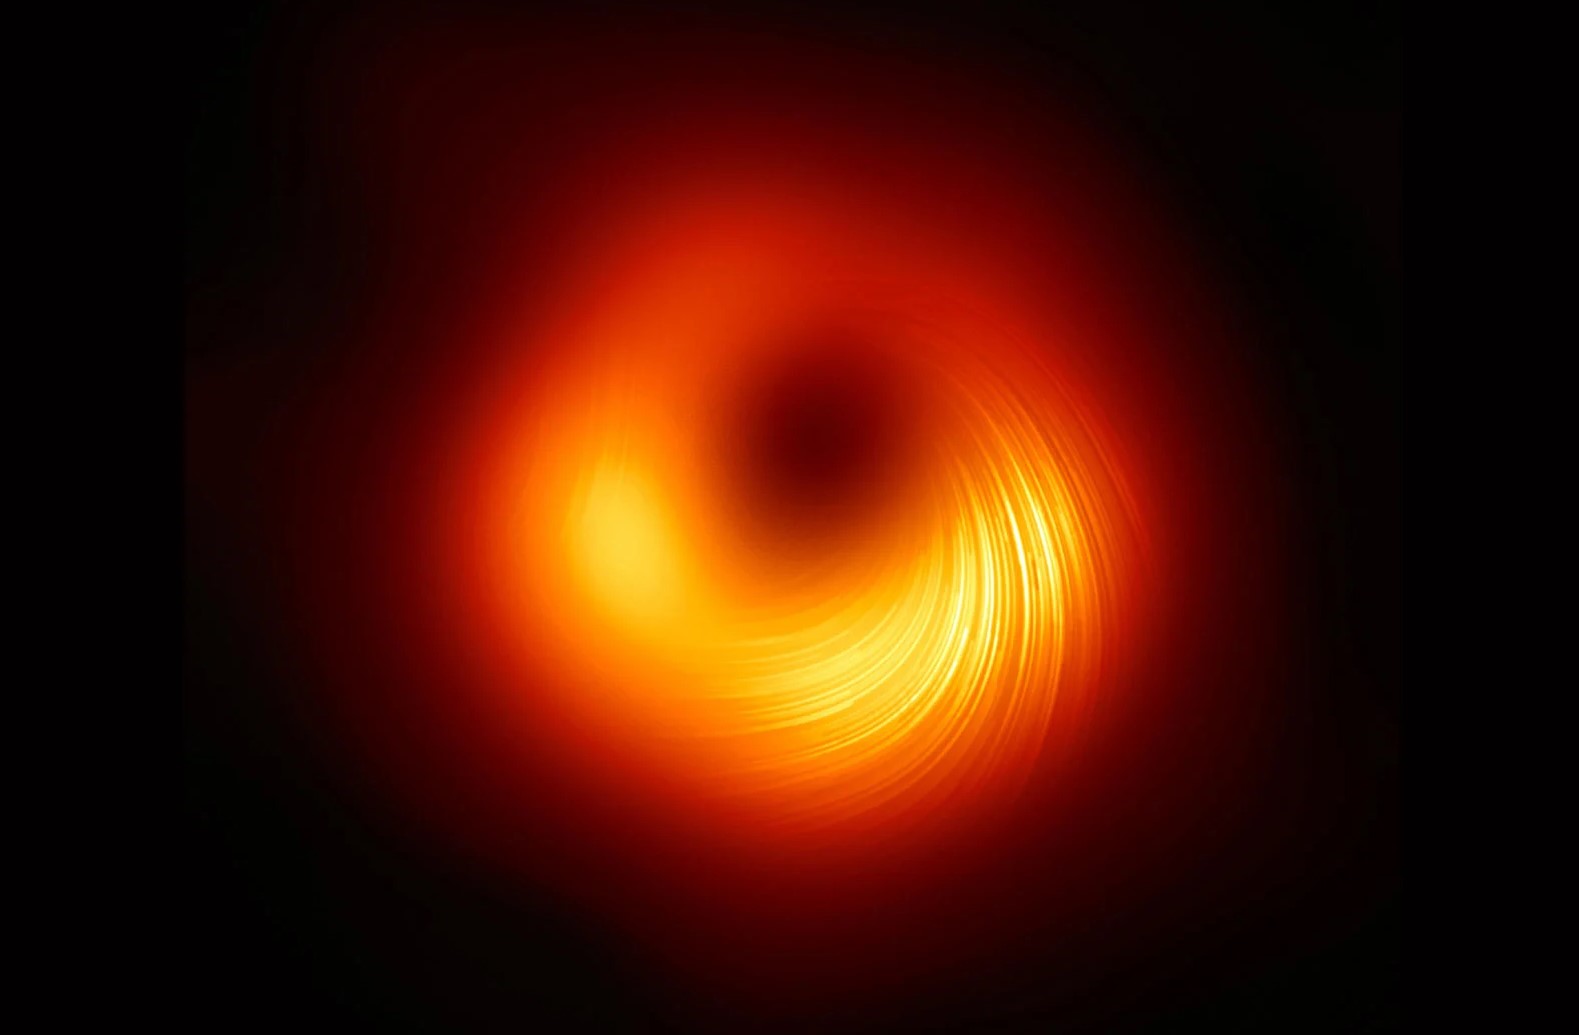 Αυτή είναι η πιο λεπτομερής & ευκρινής εικόνα μιας μαύρης τρύπας έως σήμερα